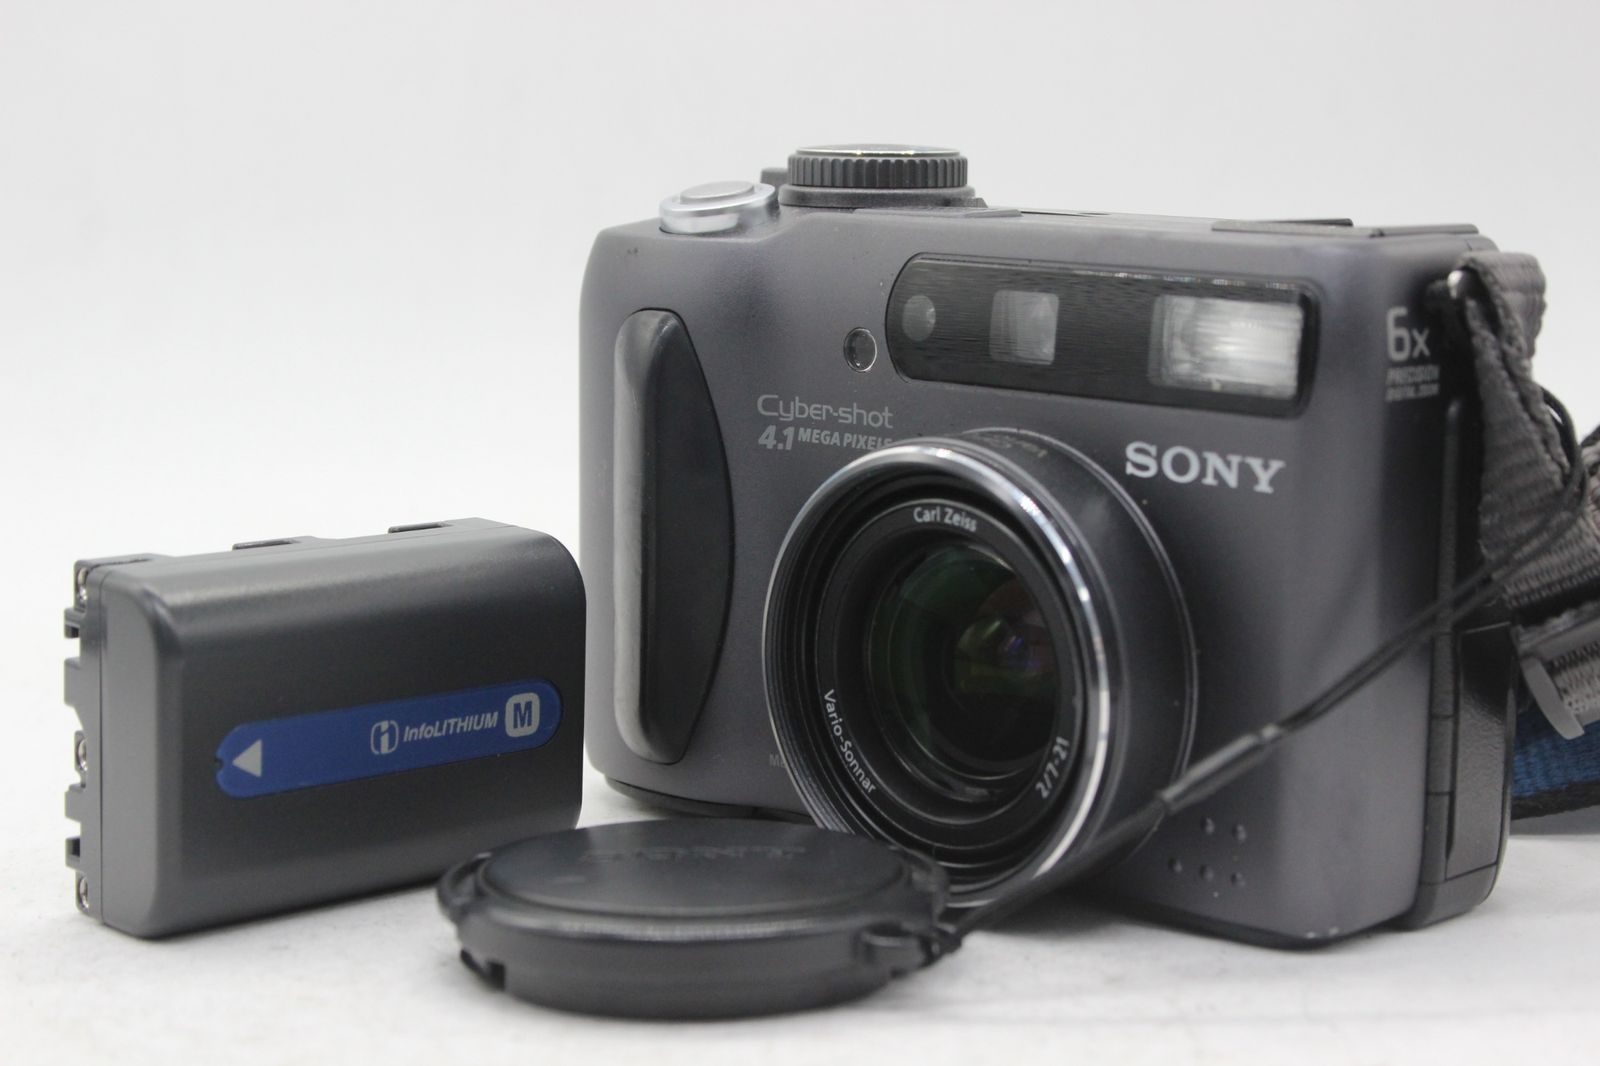 SONY 【返品保証】 ソニー SONY Cyber-shot DSC-S85 6x バッテリー付き コンパクトデジタルカメラ s8165